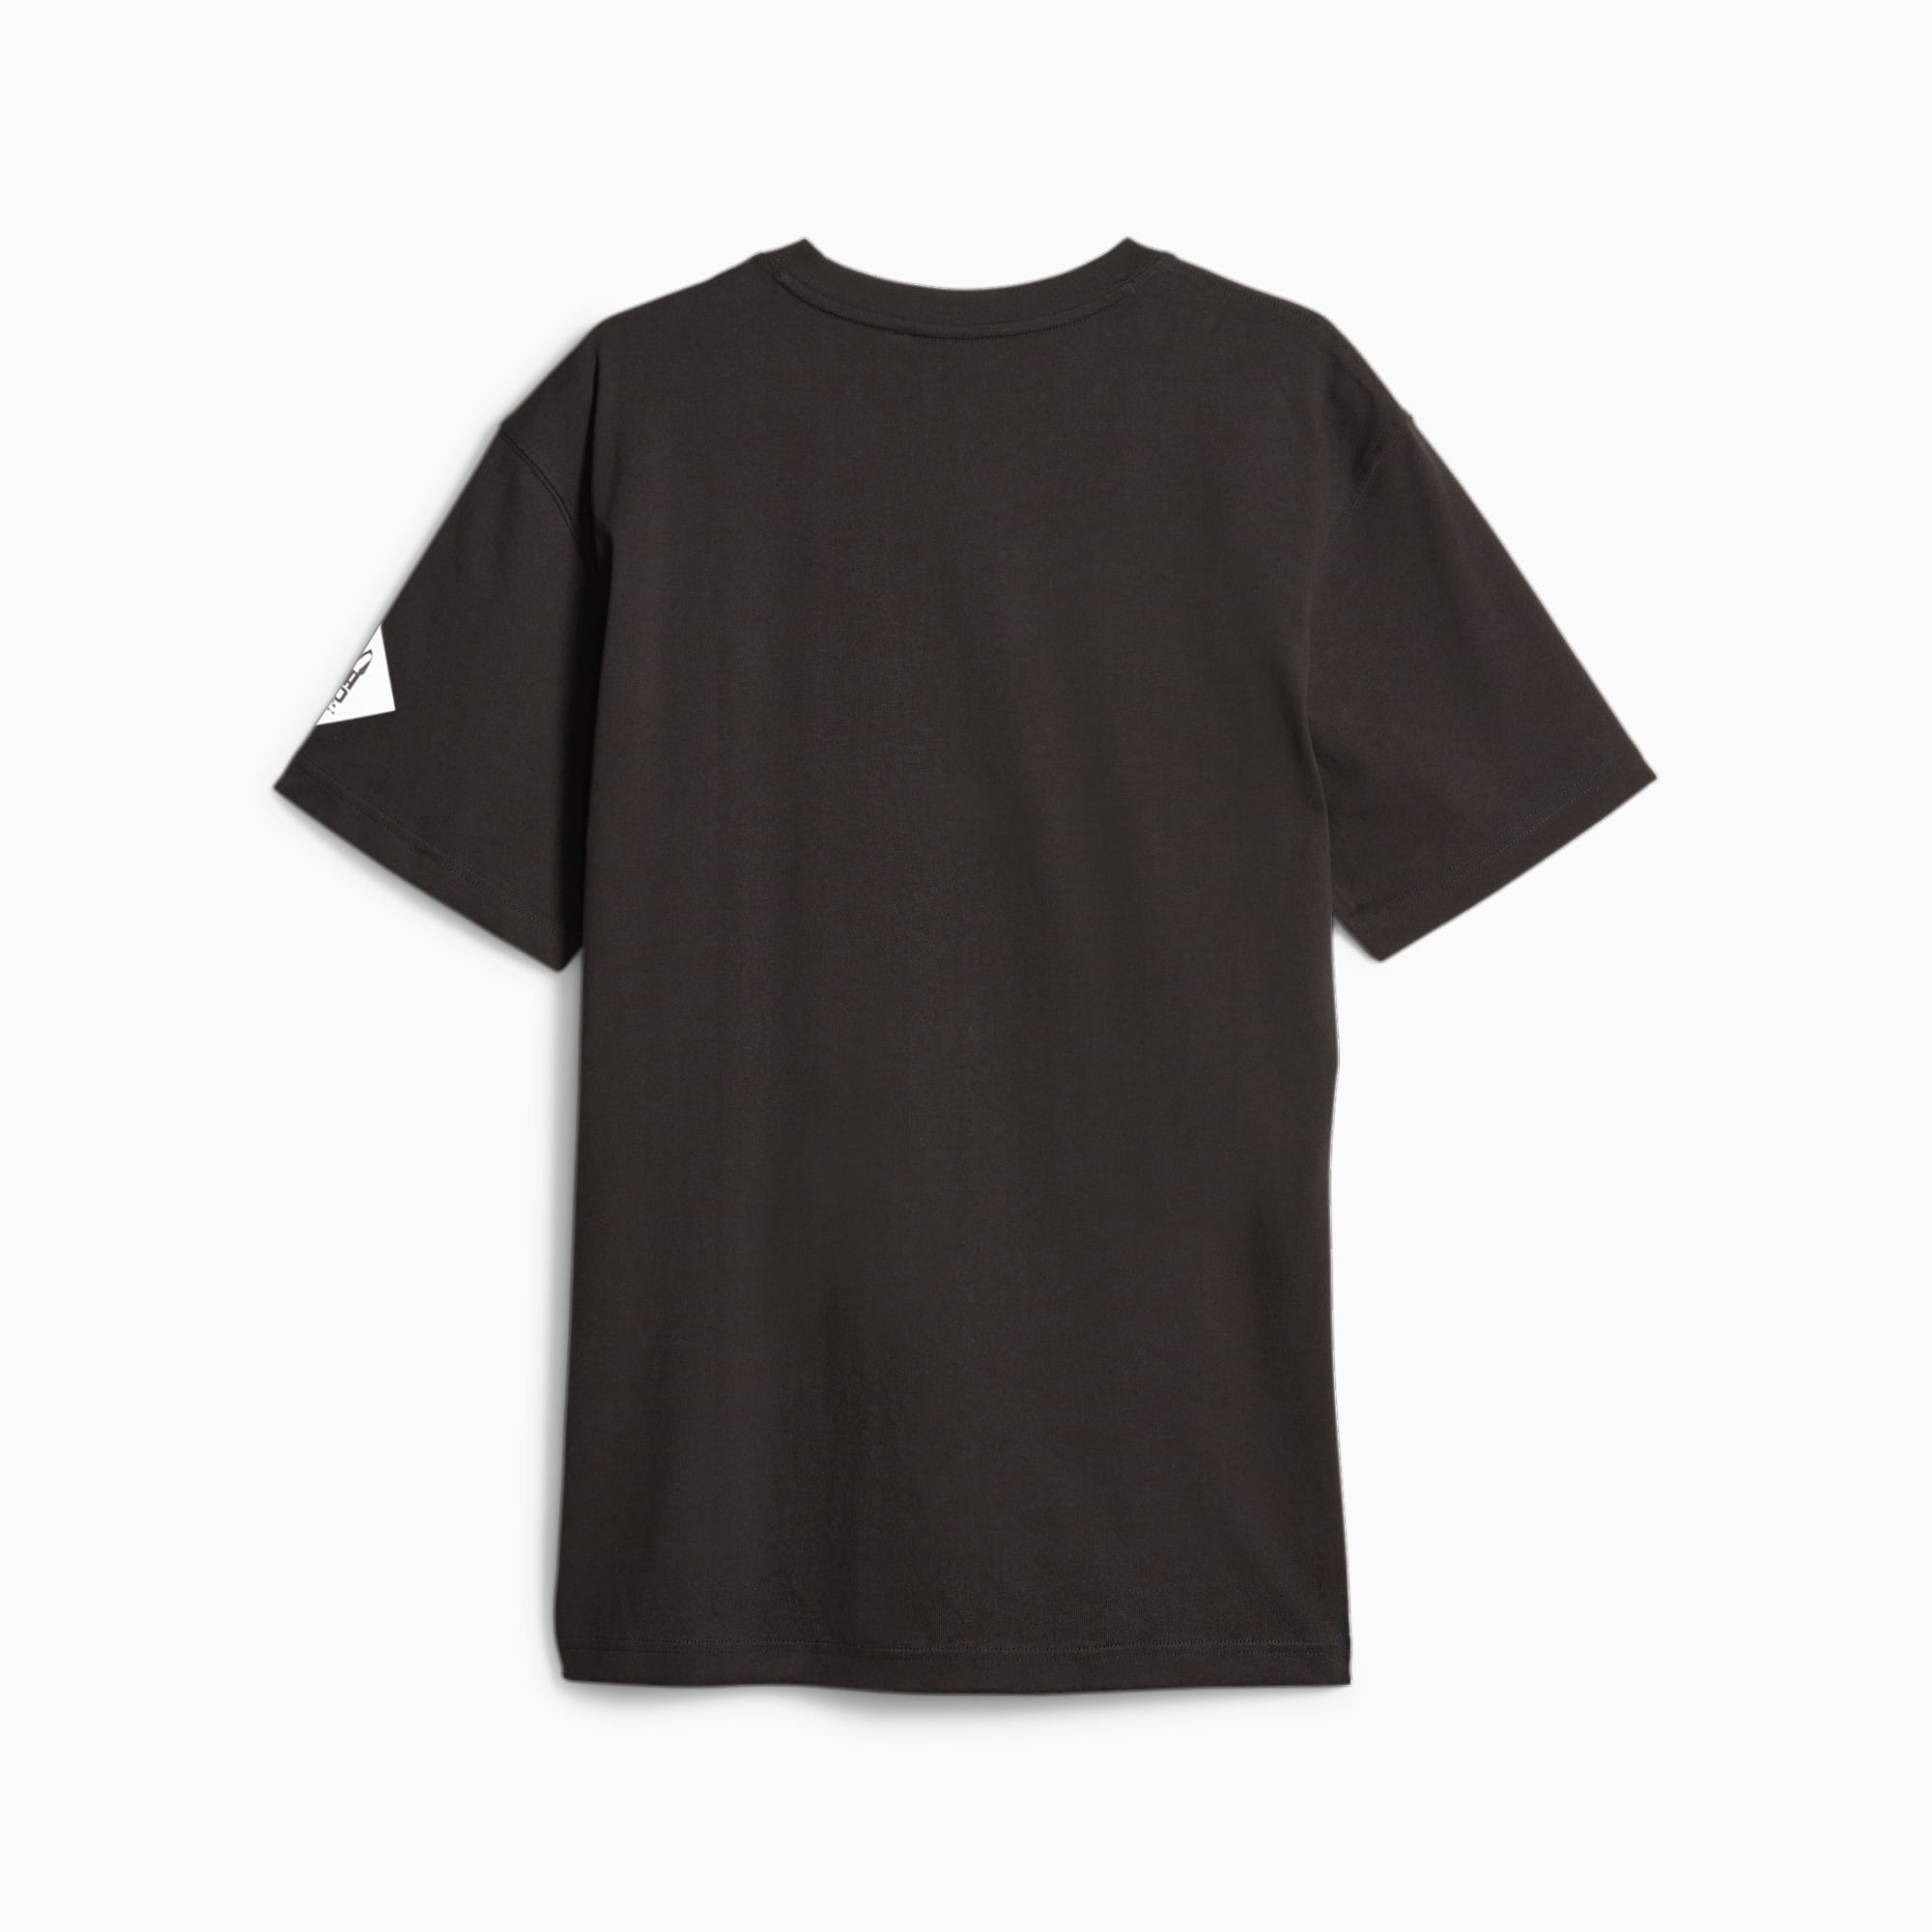 PUMA X PERKS AND MINI T-Shirt Für Herren, Schwarz, Größe: M, Kleidung